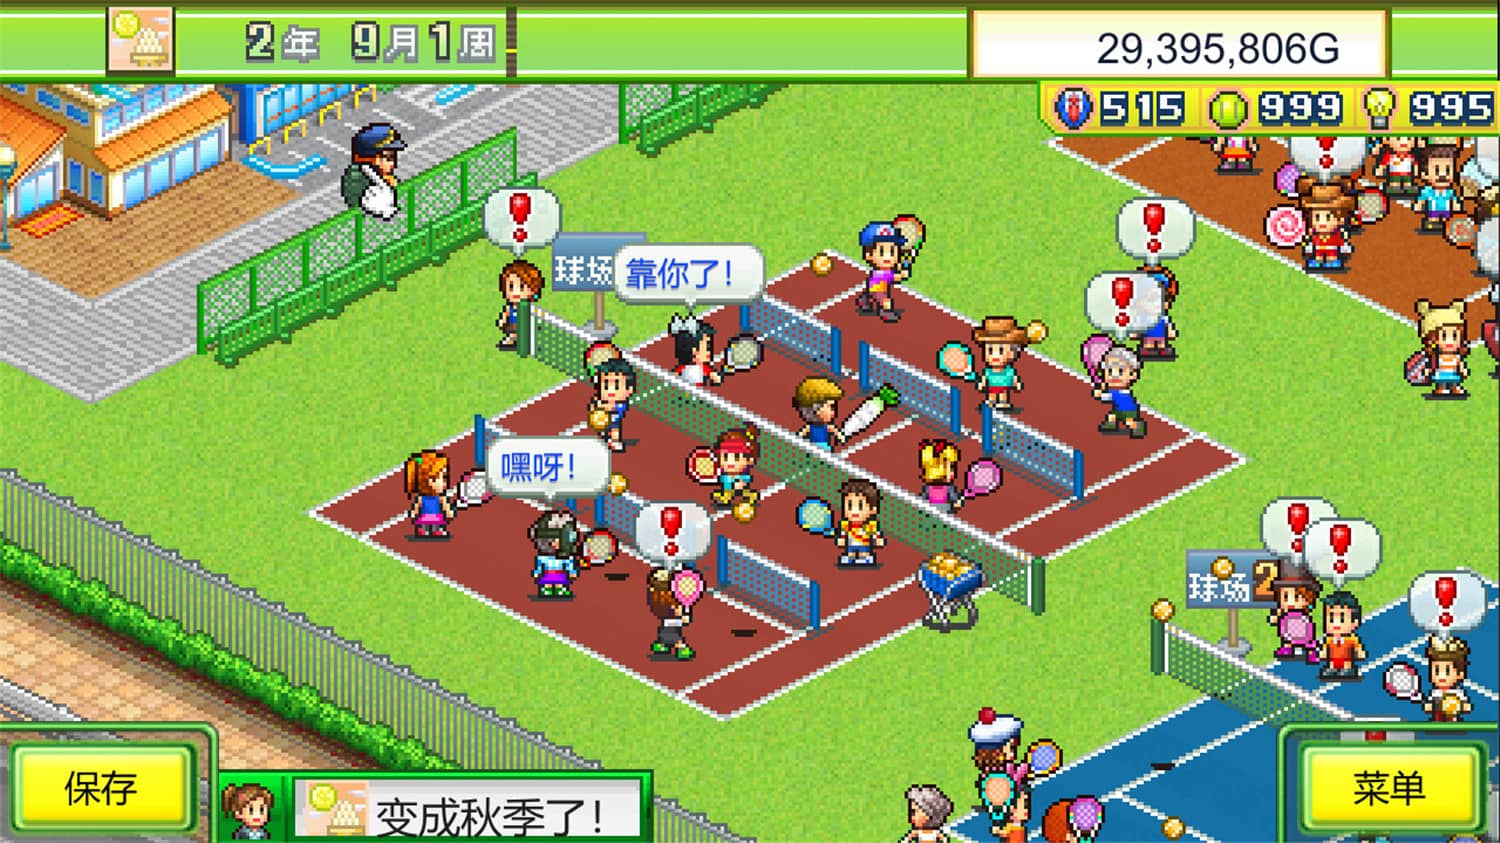 网球俱乐部物语/Tennis Club Story v2.06